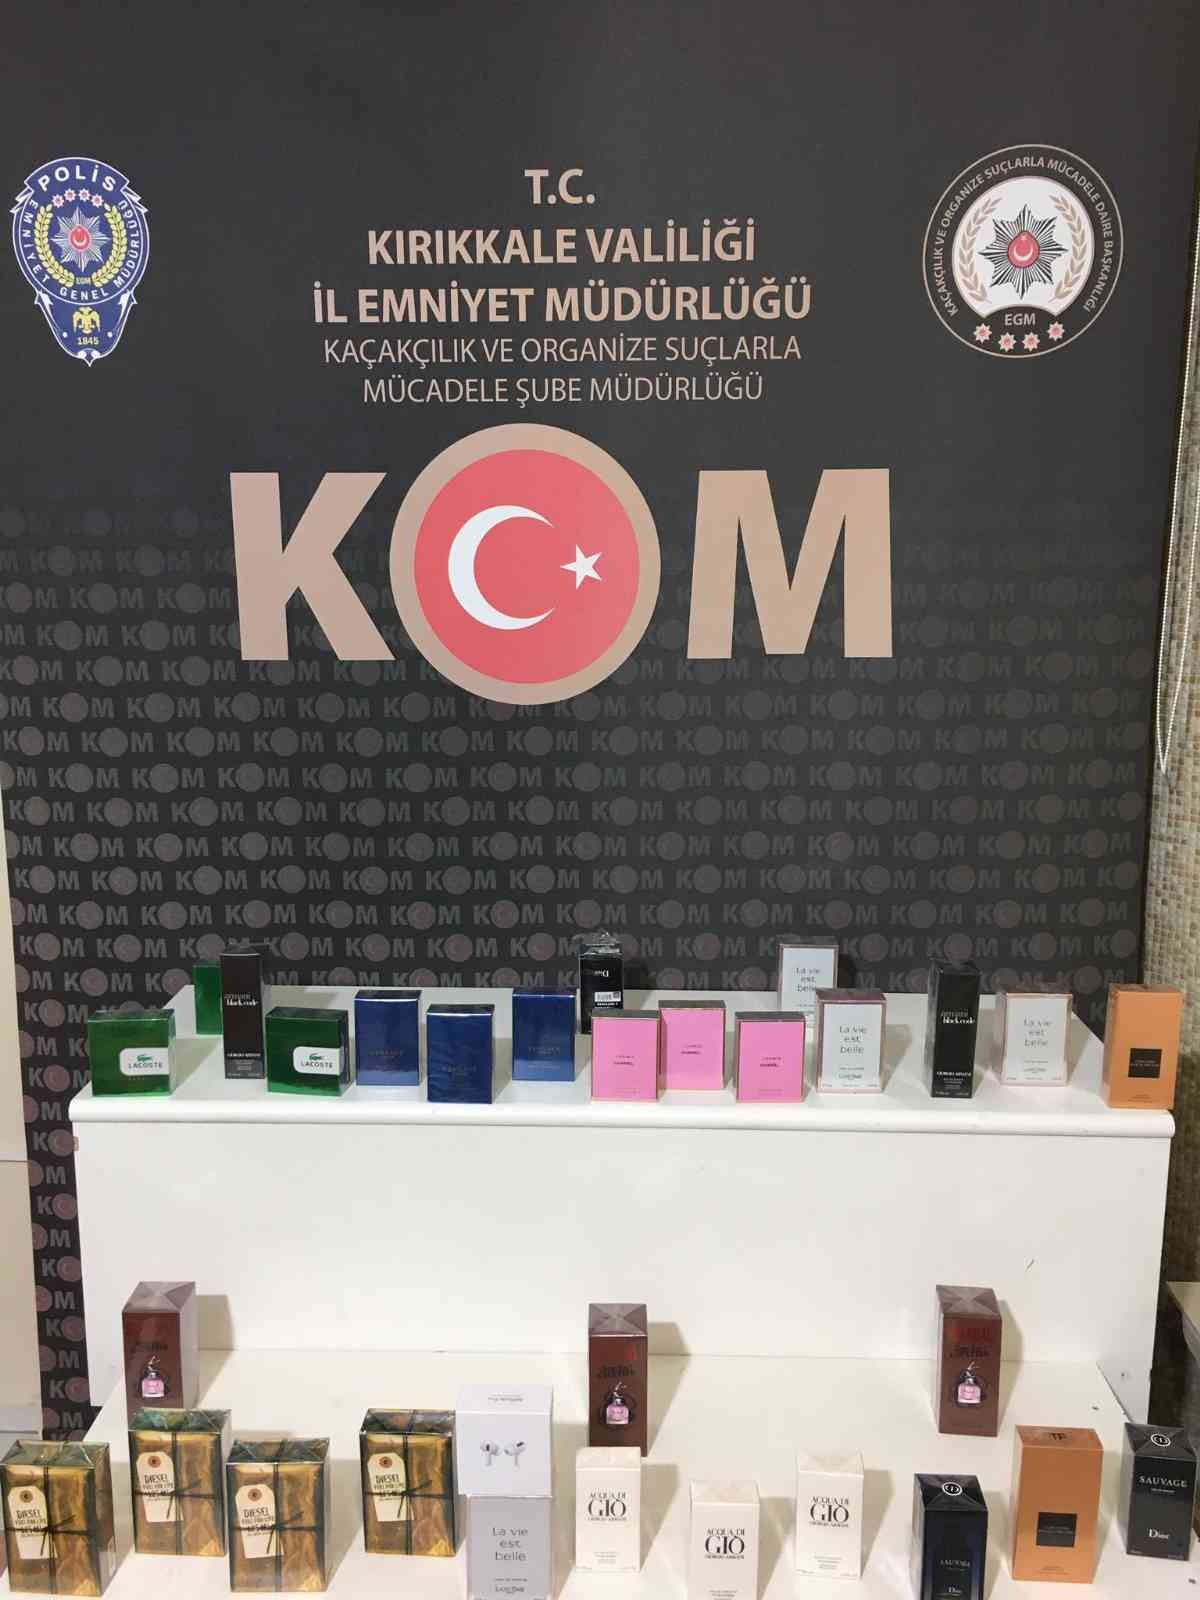 Kırıkkale’de kaçak parfüm operasyonu: 1 gözaltı #kirikkale